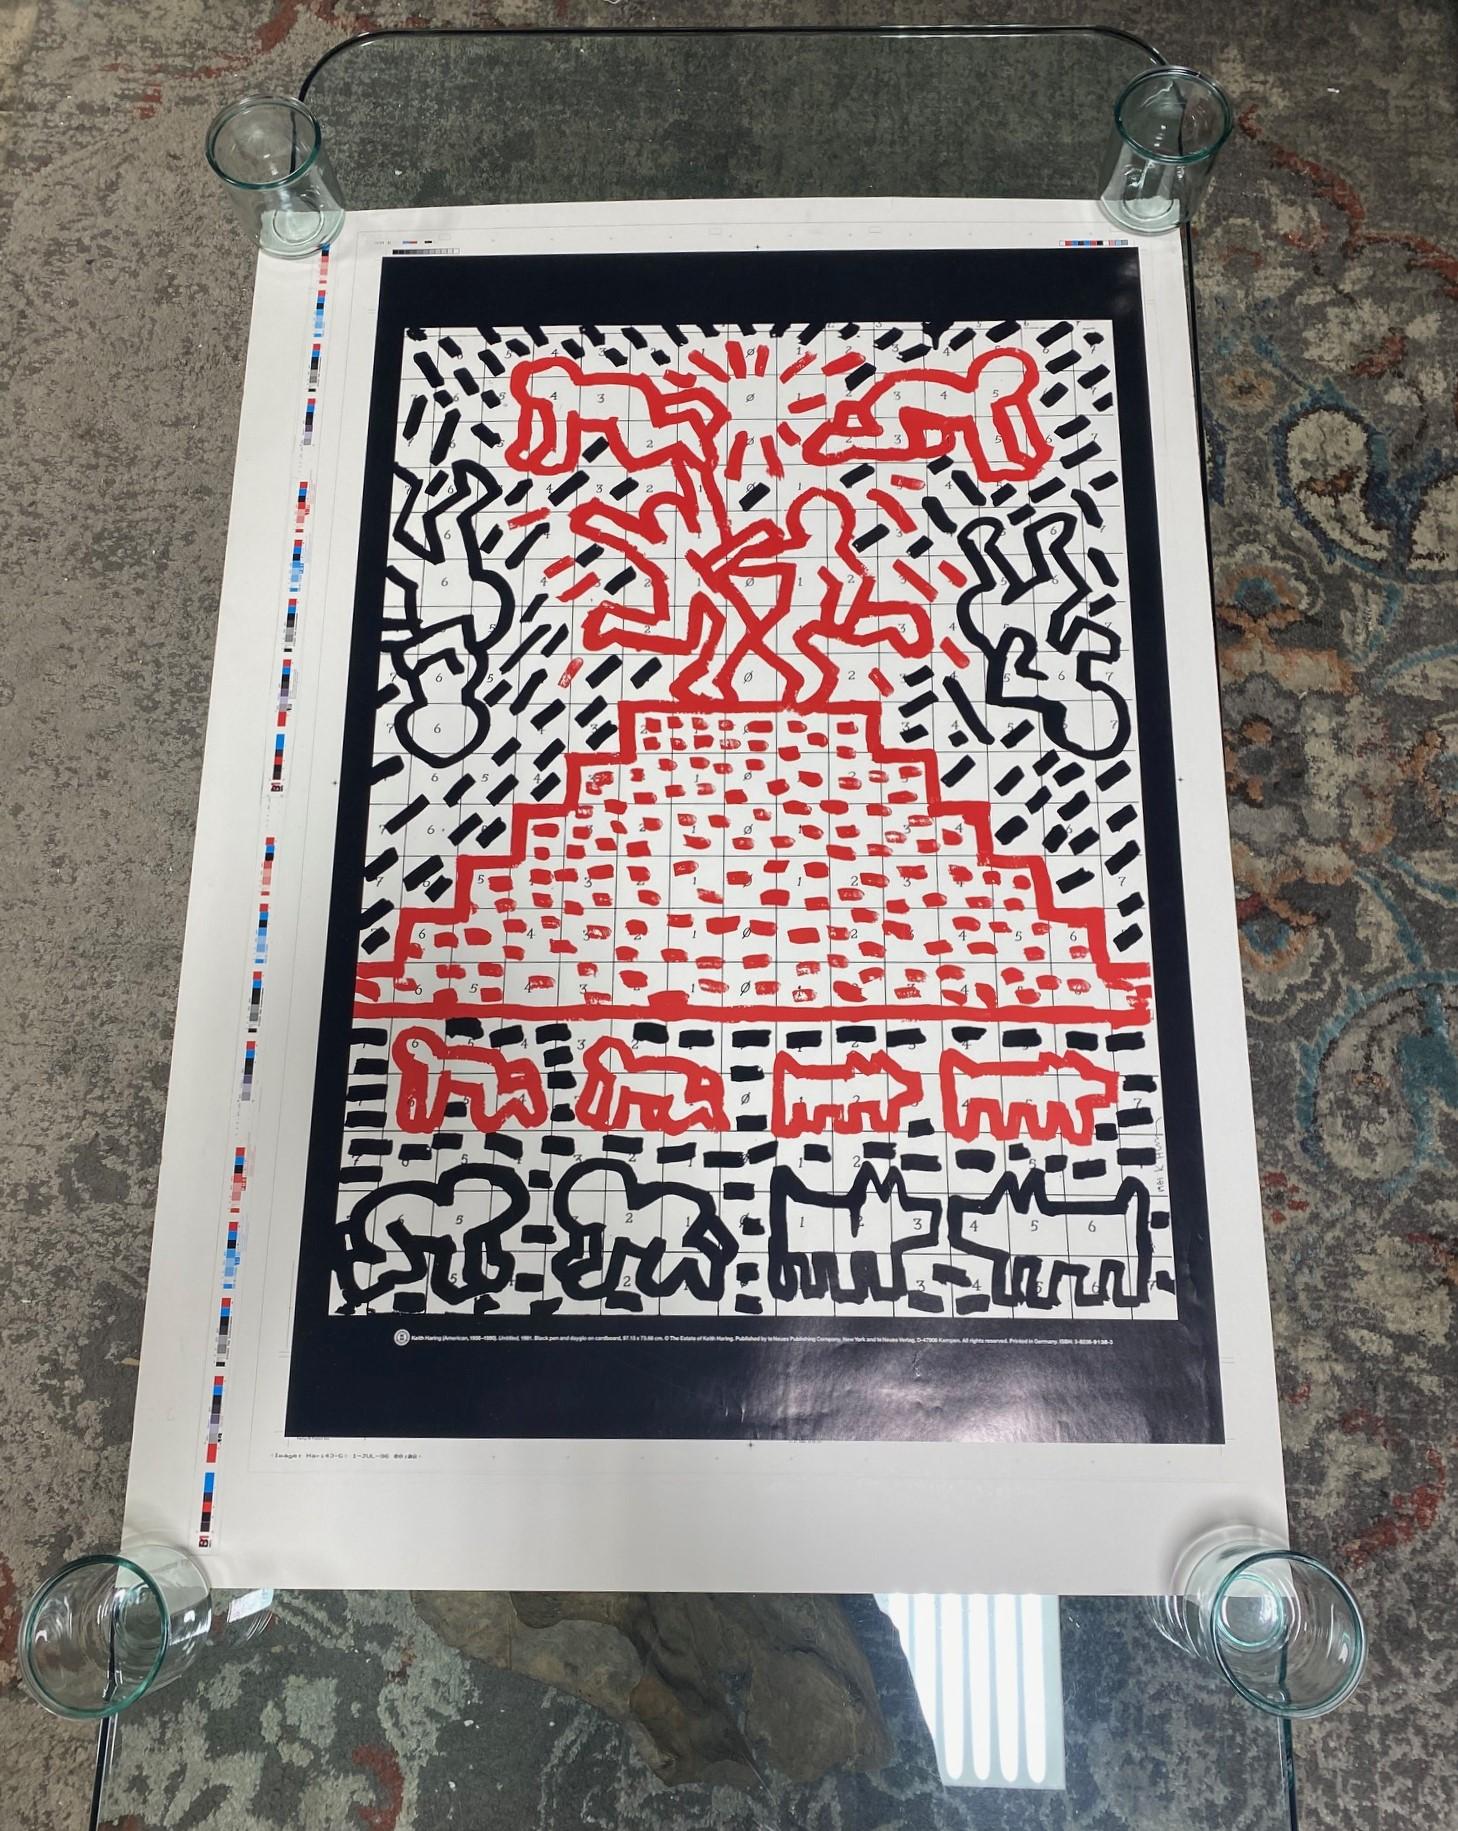 Rare affiche lithographique offset du Pop Shop Art de Keith Haring (1958-1990) (Sans titre mais souvent appelée 